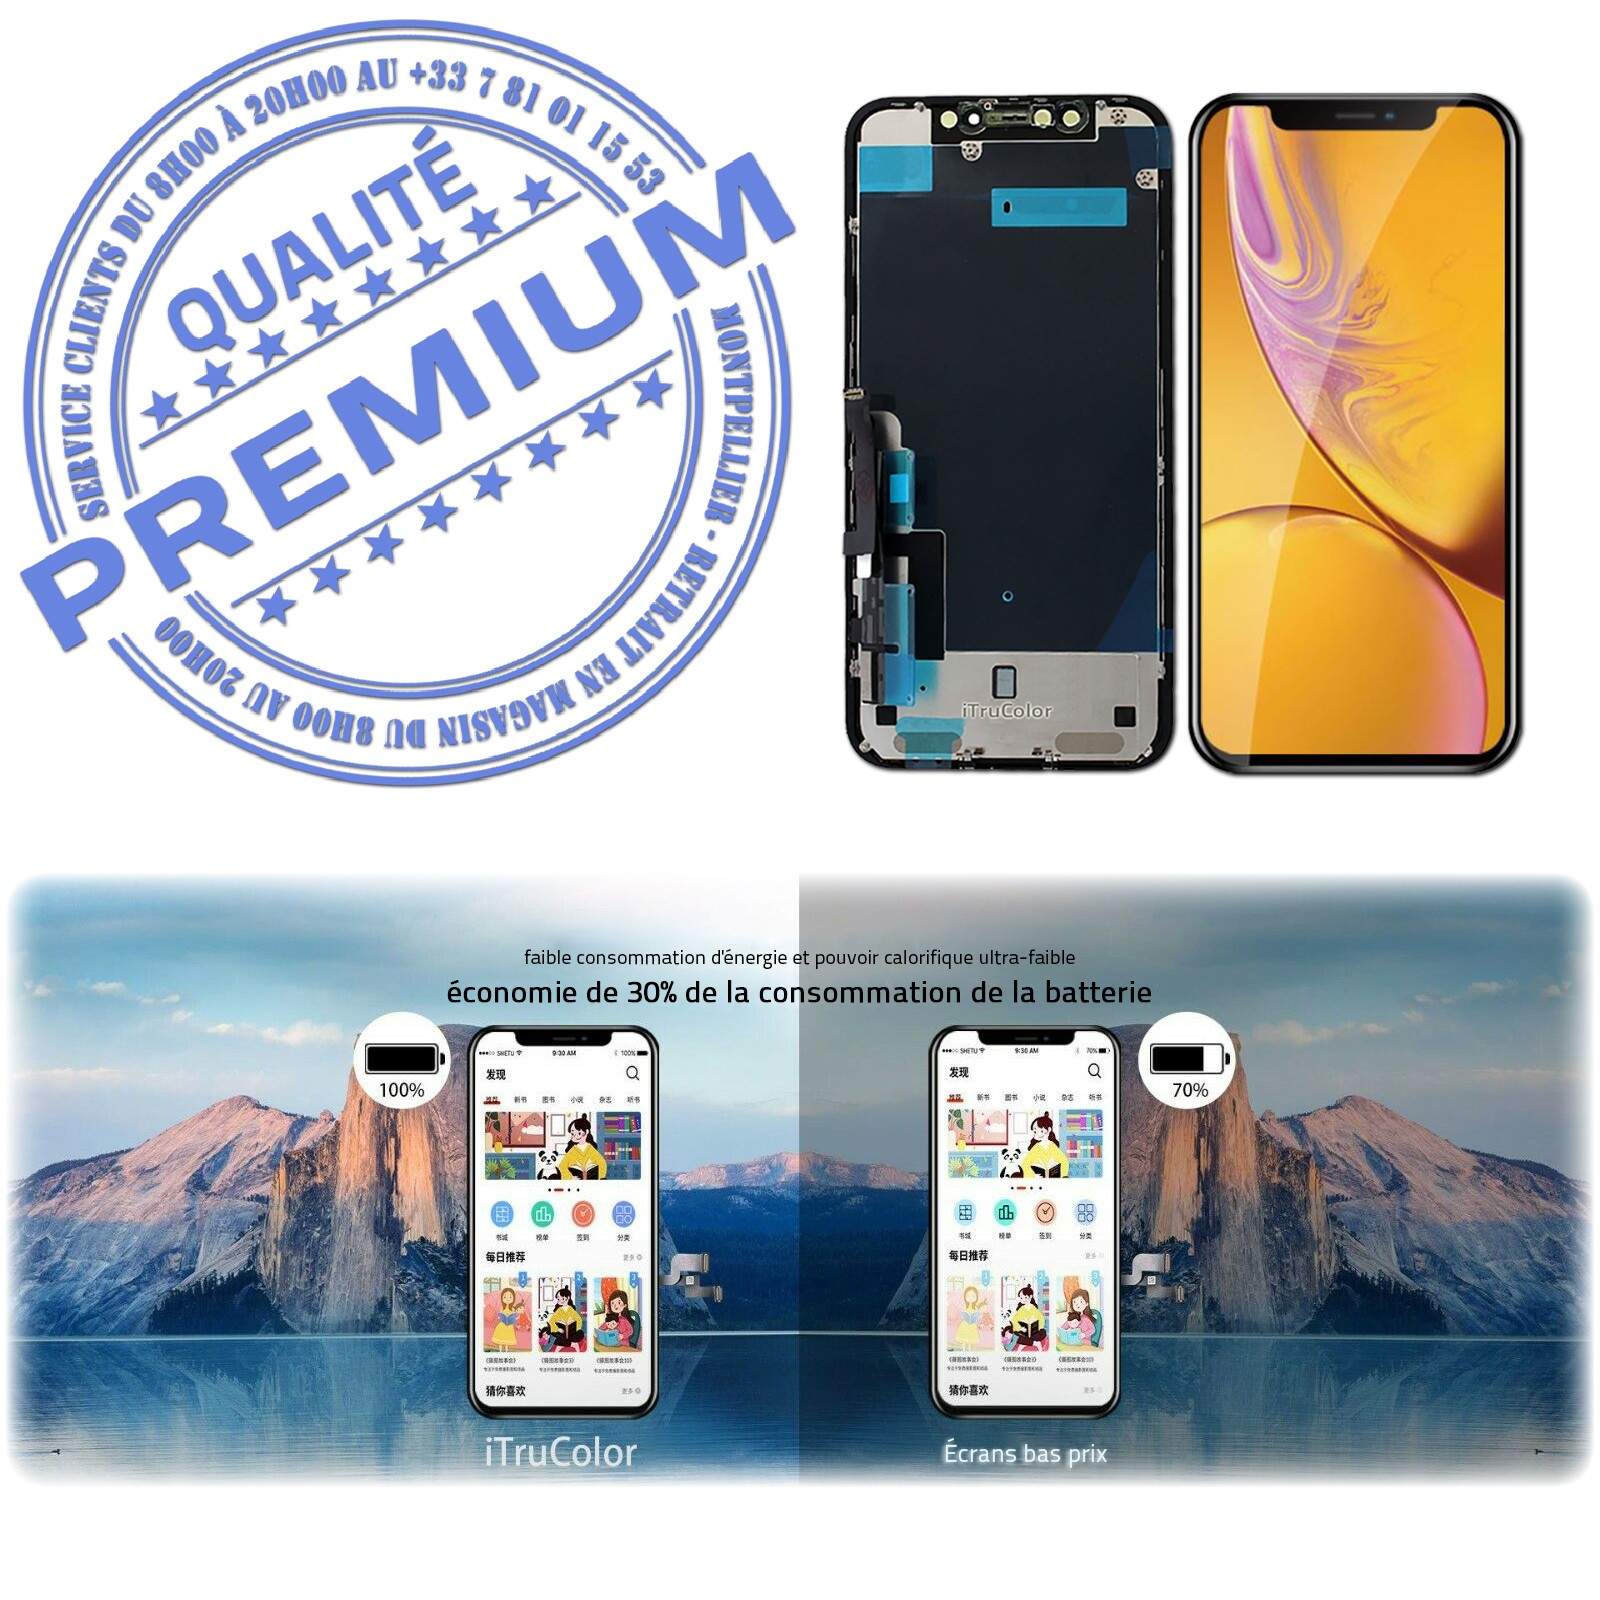 LCD iPhone XR A2105 Écran inCELL Apple PREMIUM Super Retina 6,1 pouces  Vitre SmartPhone Affichage True Tone Cristaux Liquides